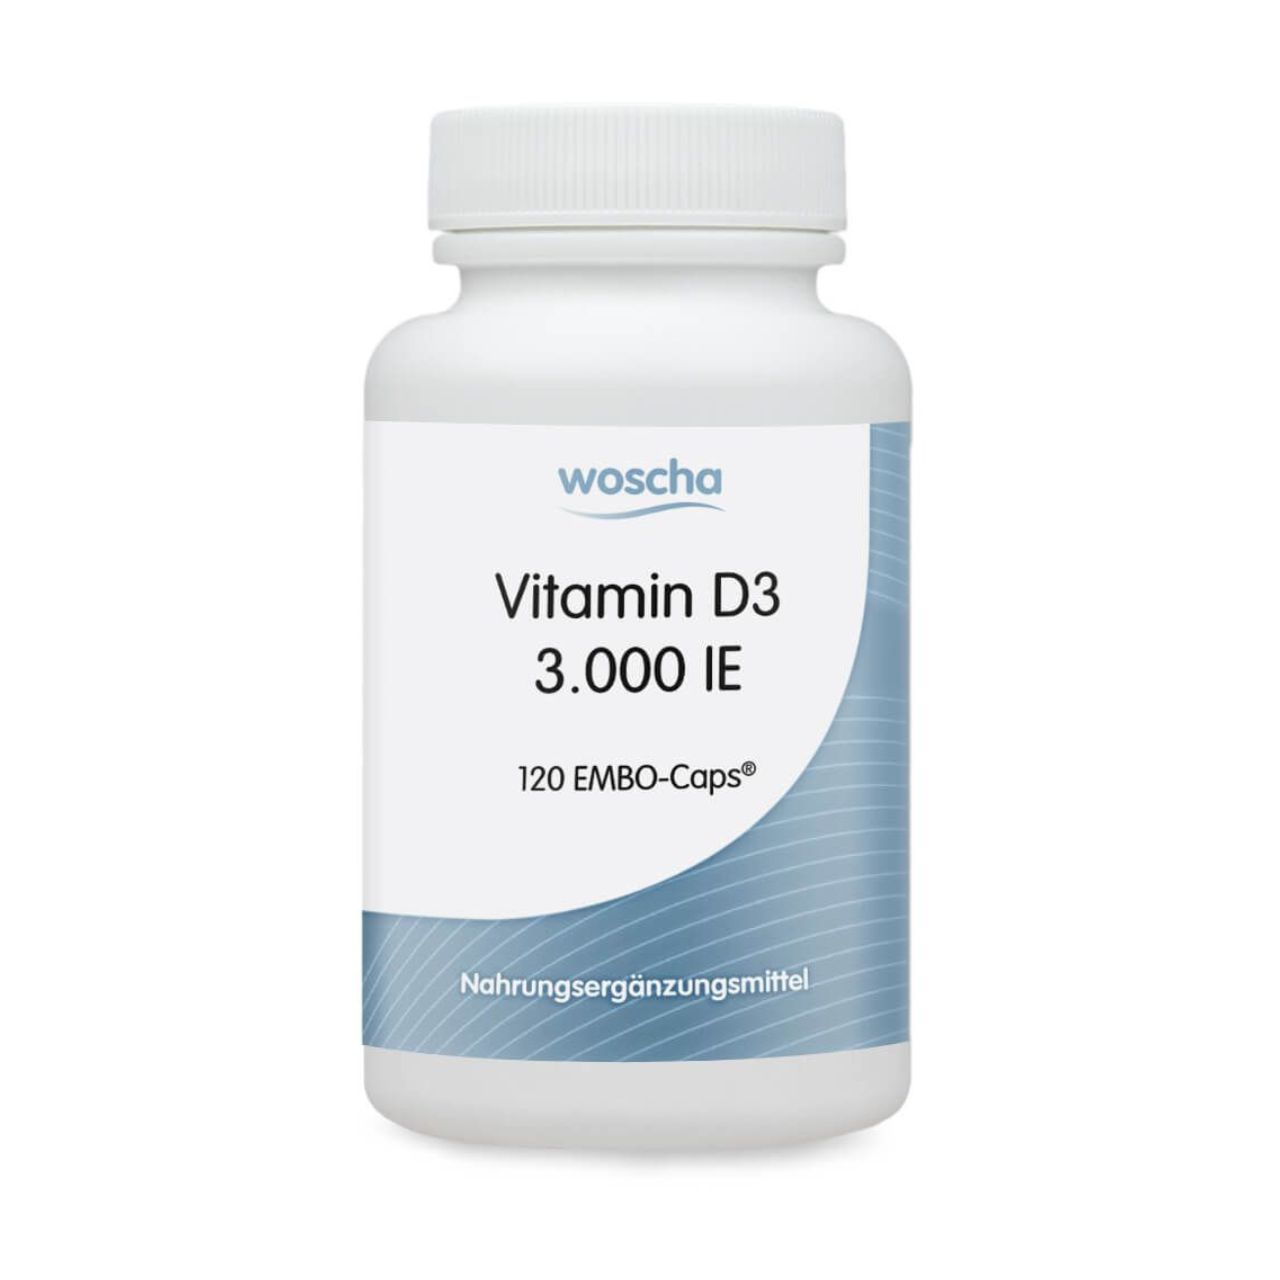 Woscha Vitamin D3 3.000 IE von podo medi beinhaltet 120 Kapseln